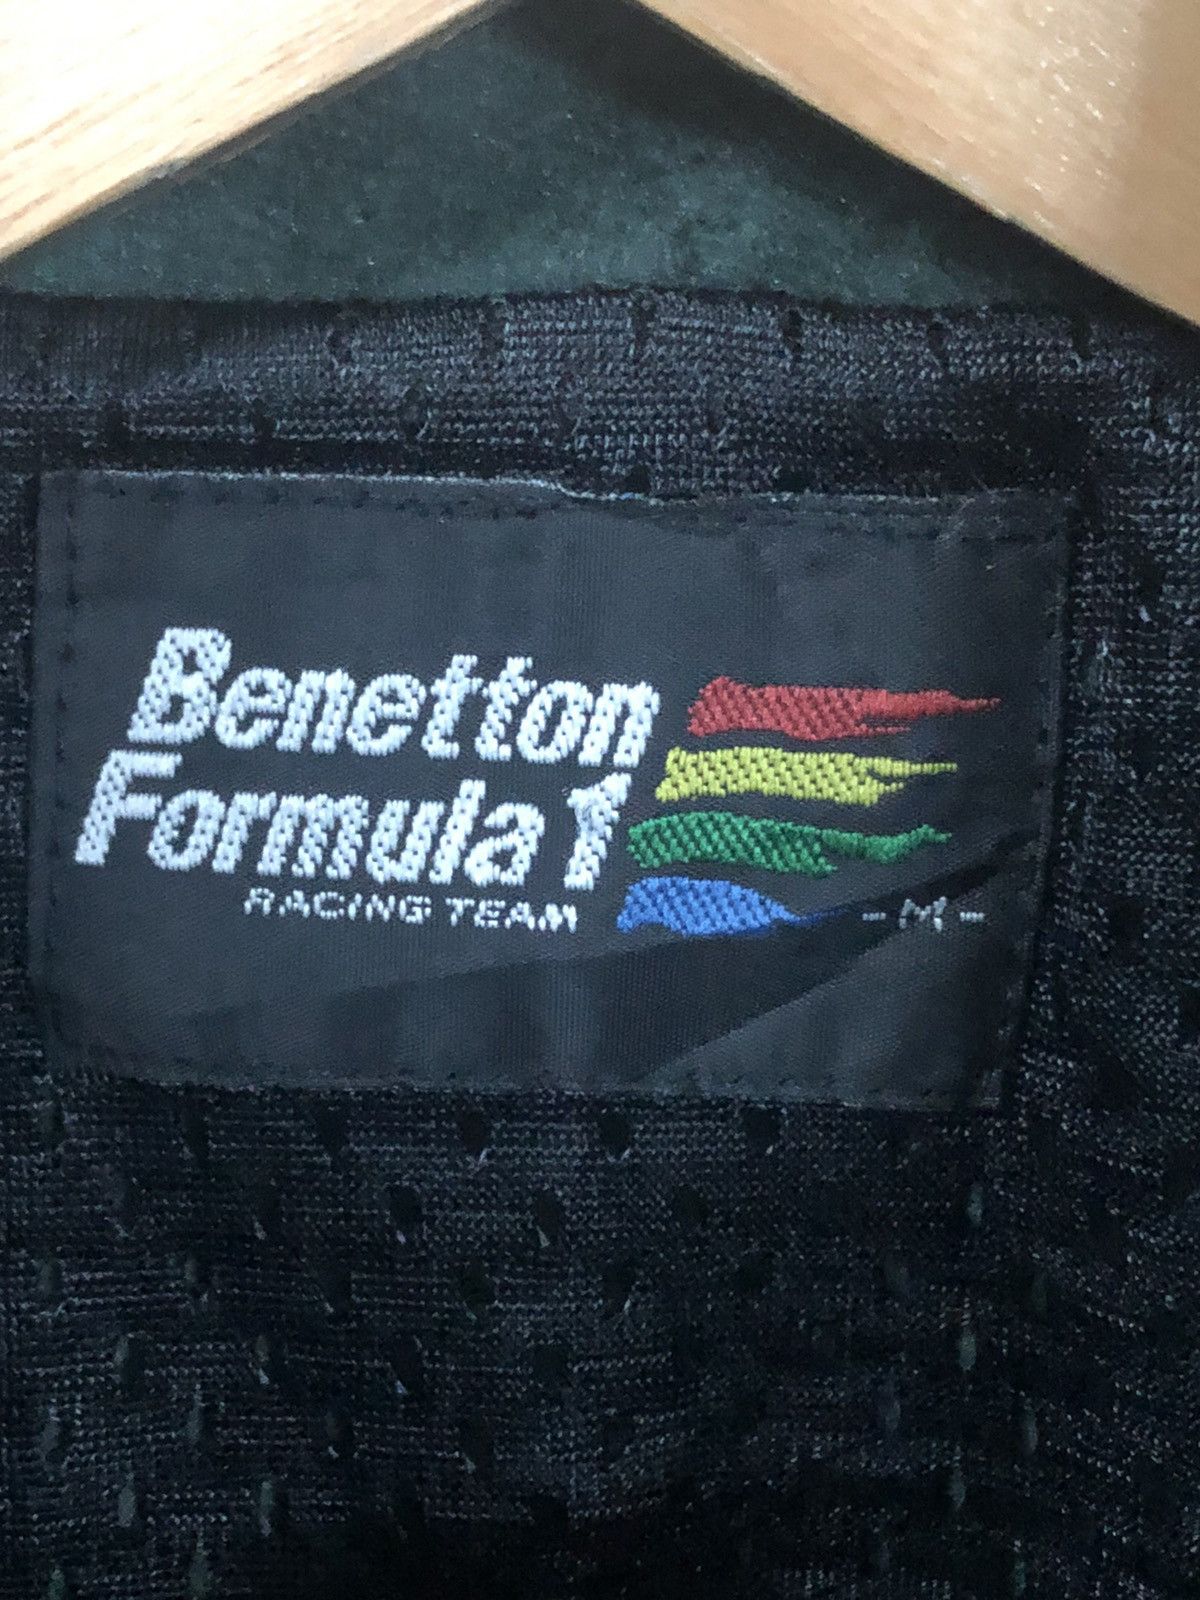 Sports Specialties - Benetton Formula 1 Racing Team Vest Jacket - 8